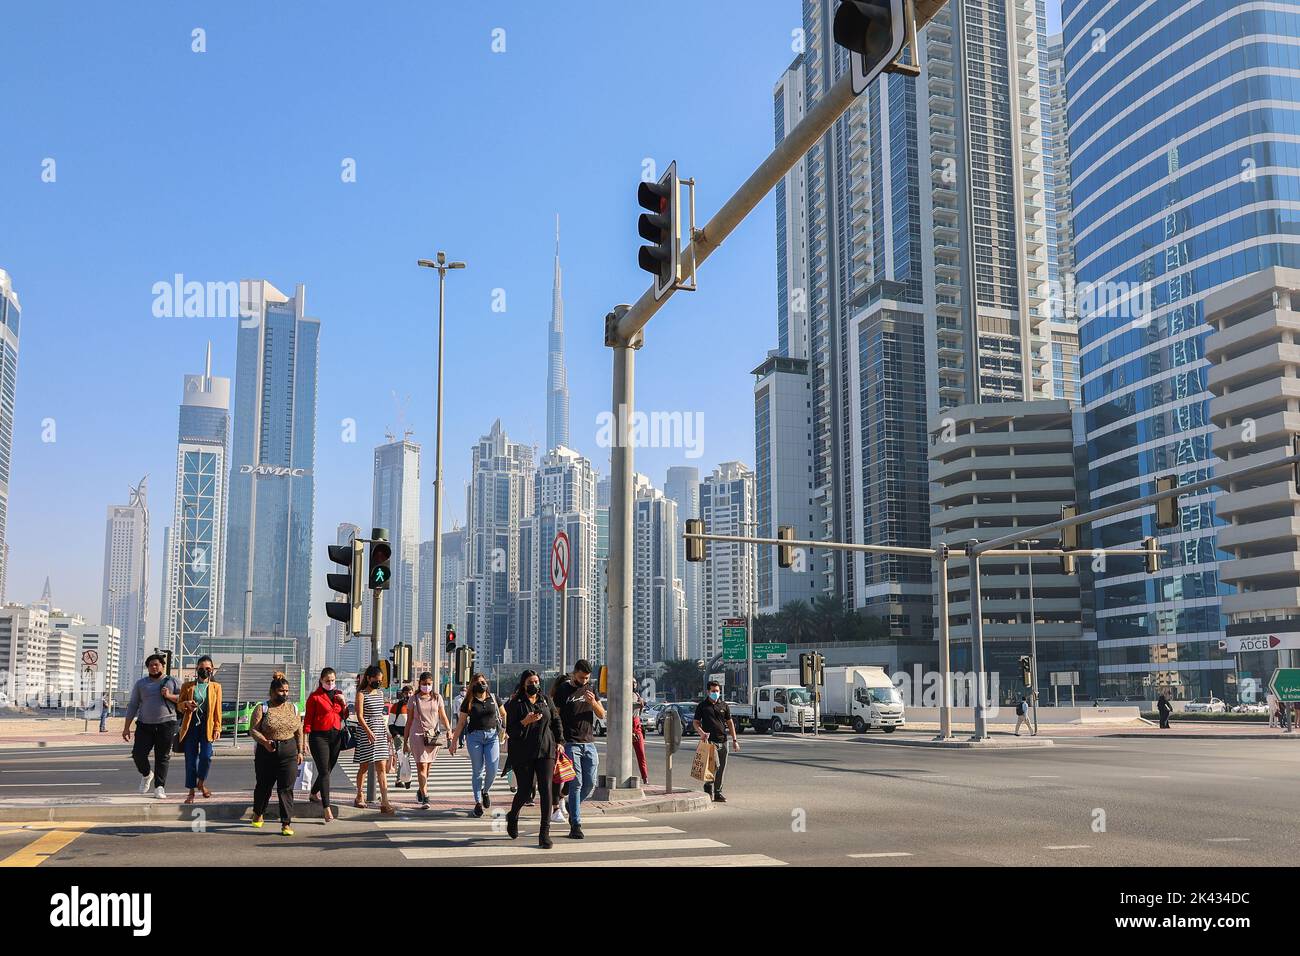 Eau, Dubaï - 27 novembre 2021 : les gens marchent le long de la traversée piétonne dans le centre d'affaires de Dubaï. Les hommes en costume et les masques médicaux se précipitent pour travailler sur fond d'énormes gratte-ciel. Photo de haute qualité Banque D'Images